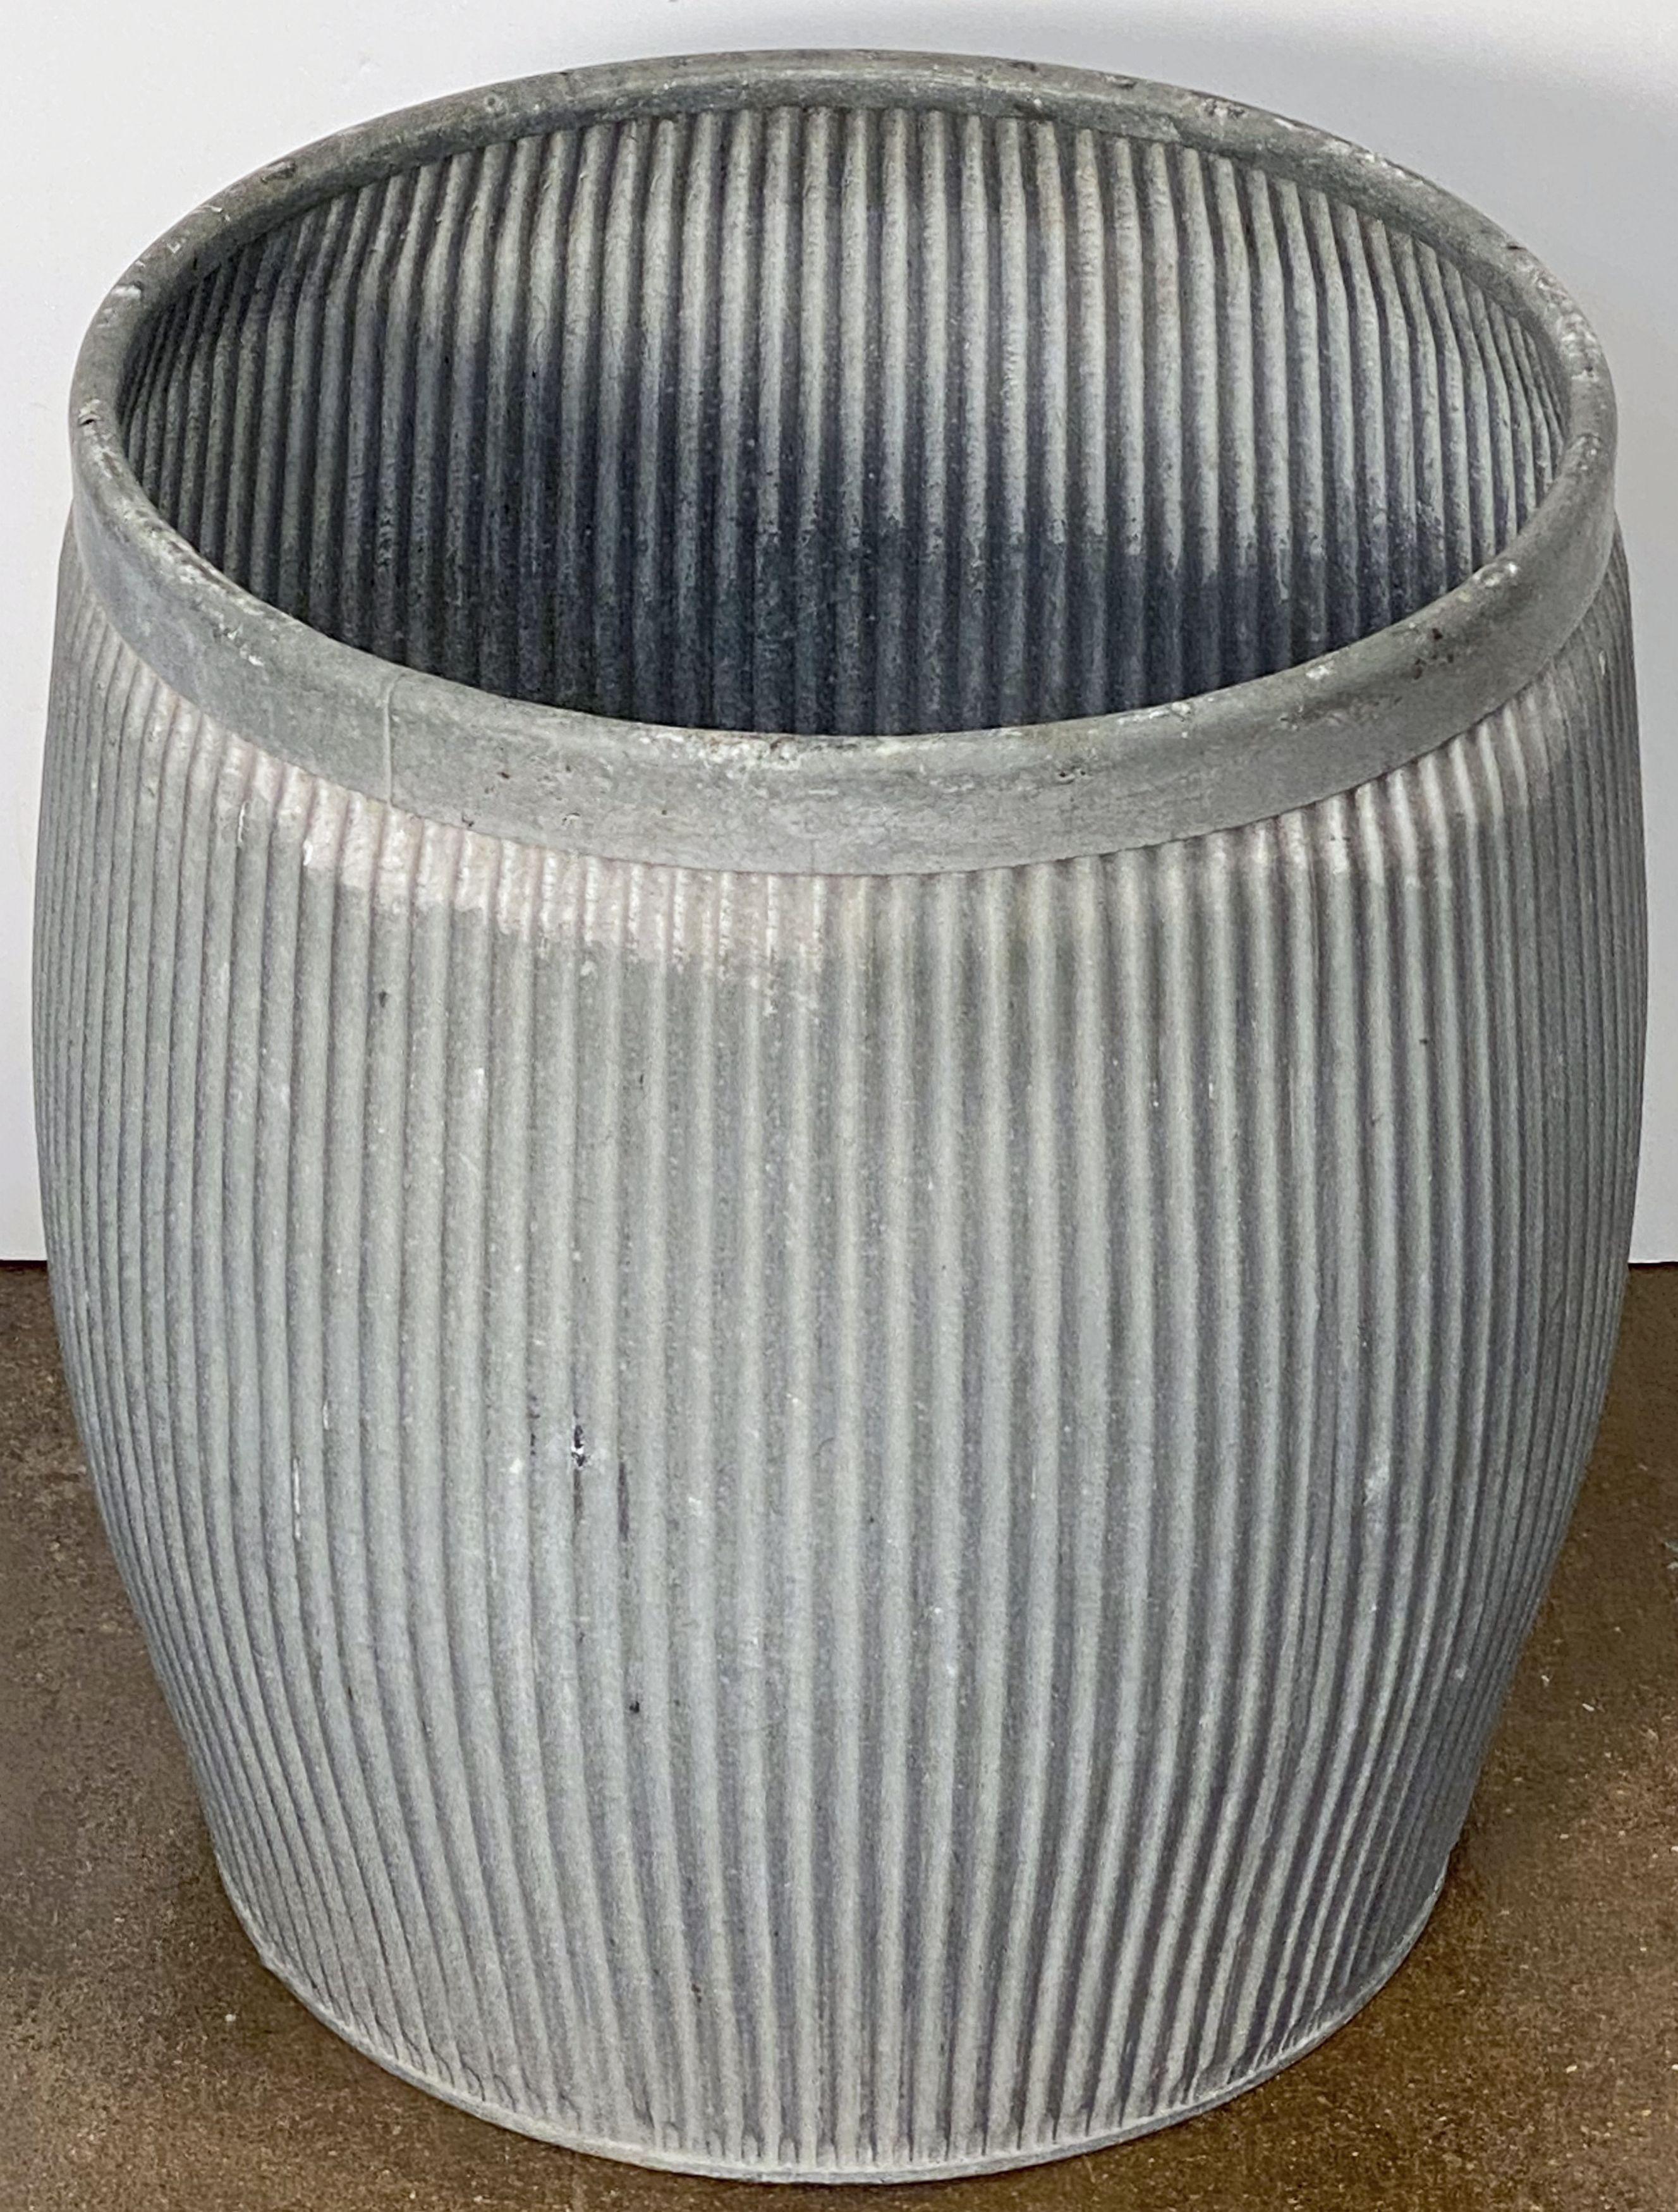 English Zinc Garden Pot or Dolly Tub Planter from England